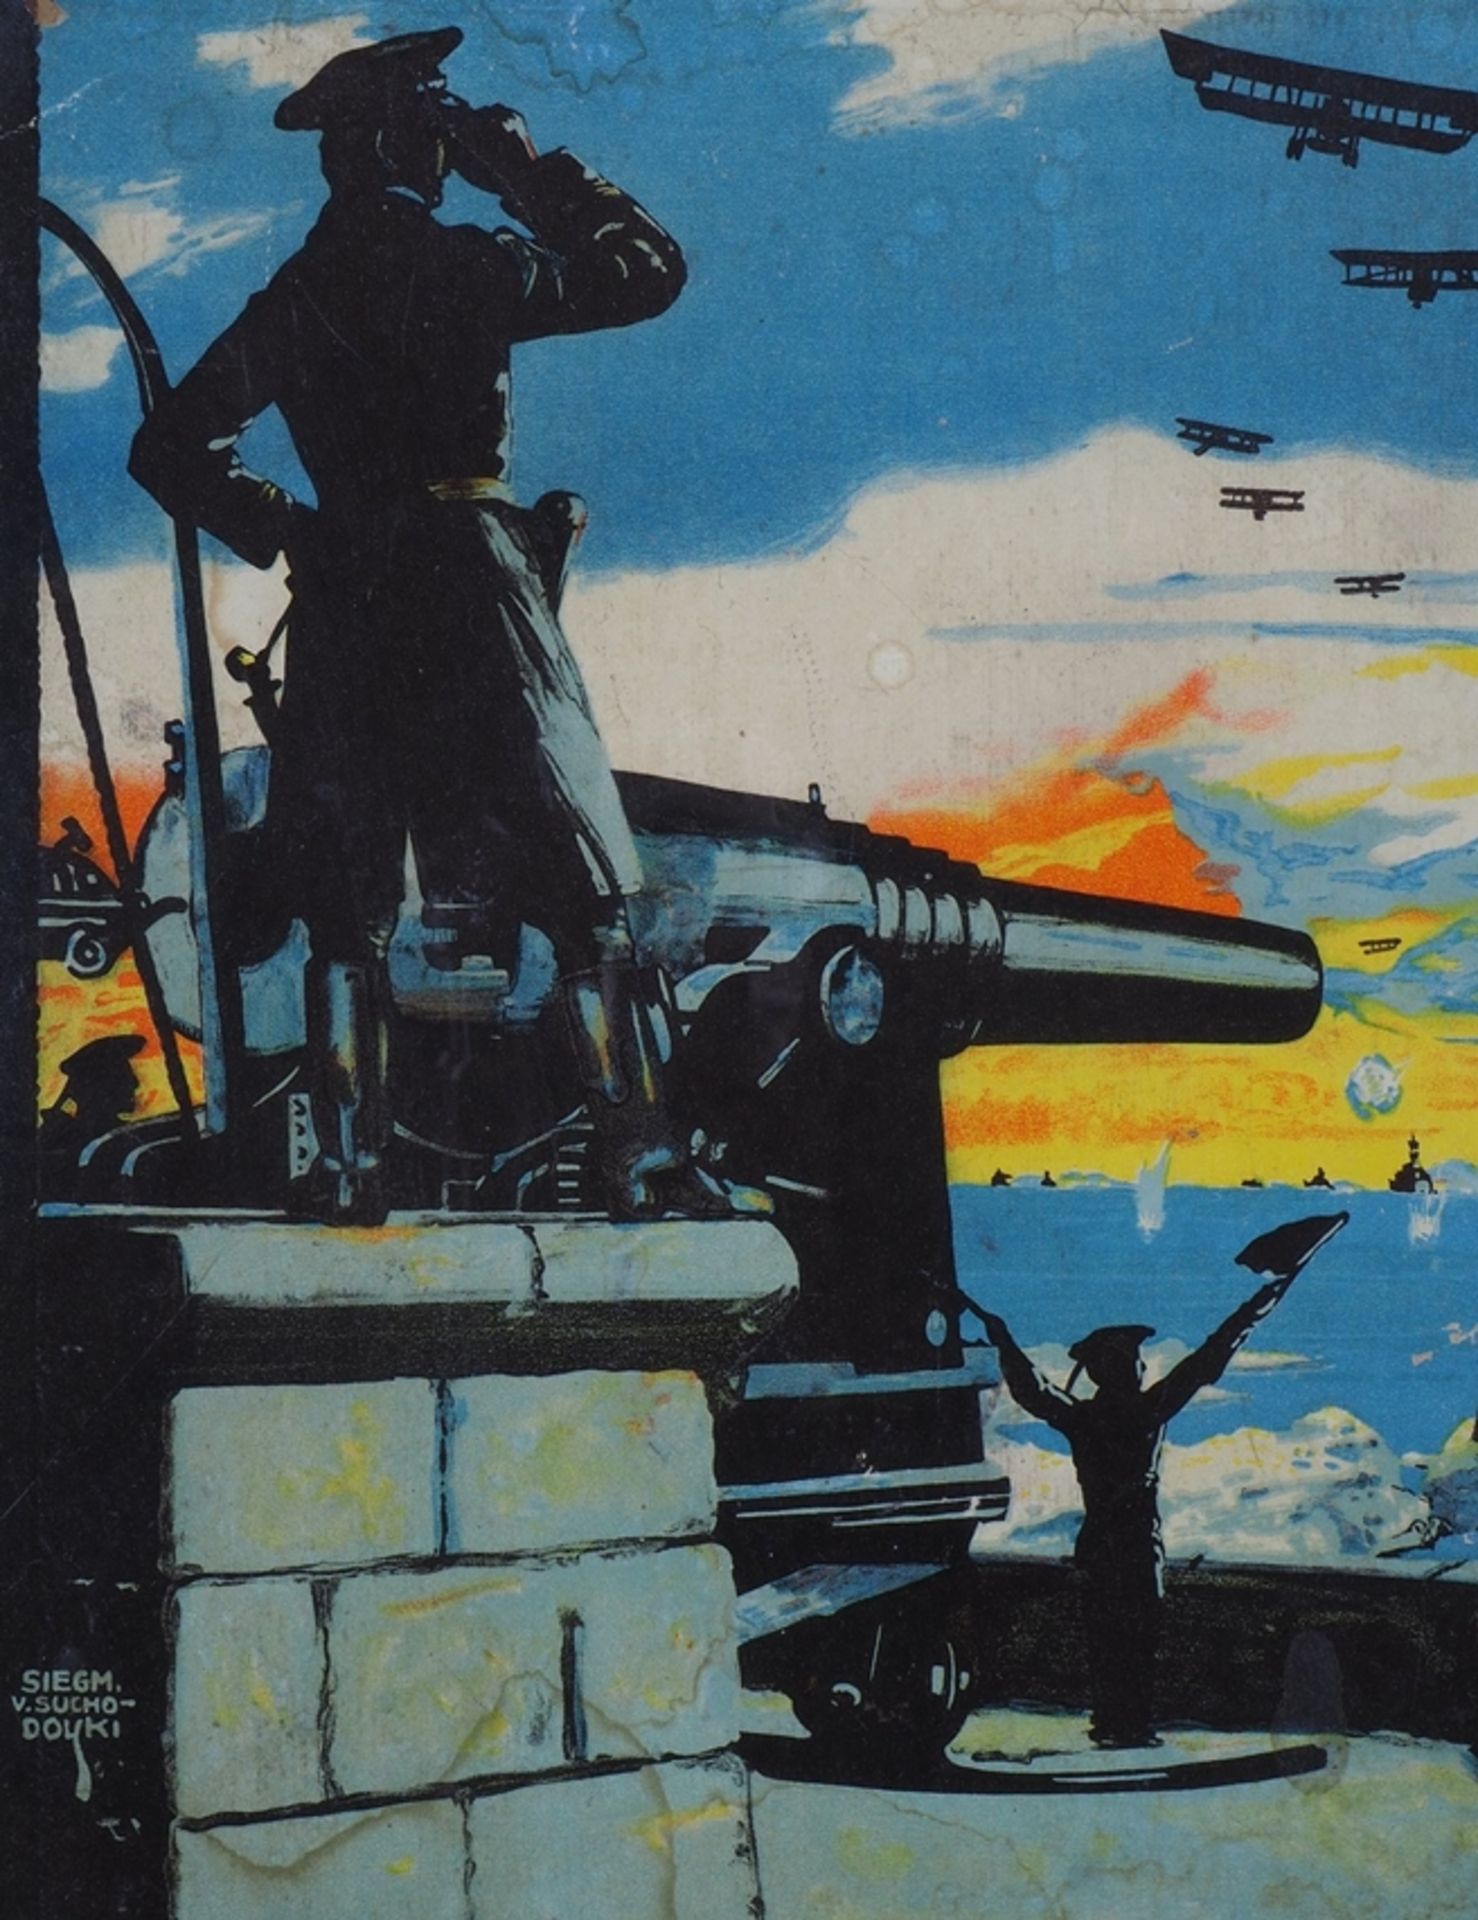 Siegmund von Suchodolski (1875-1935): "Land und Seekrieg", 1. Wk, Kriegsplakat  - Bild 2 aus 2